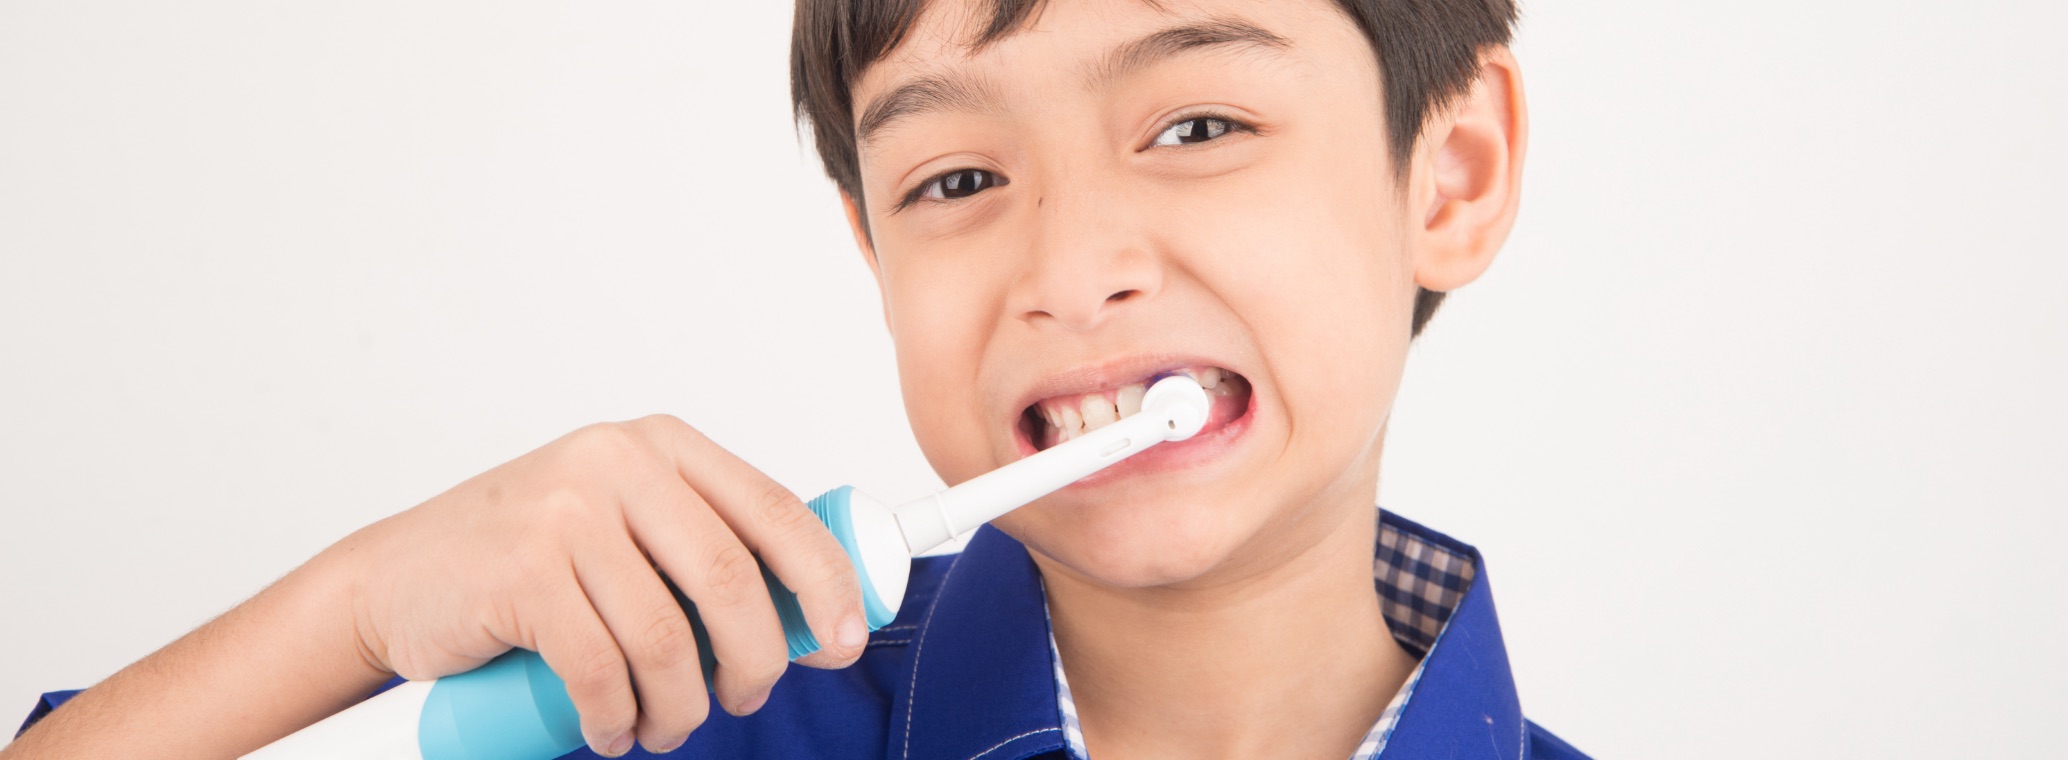 Jakie kryteria brać pod uwagę przy wyborze elektrycznej szczoteczki do zębów dla dziecka_